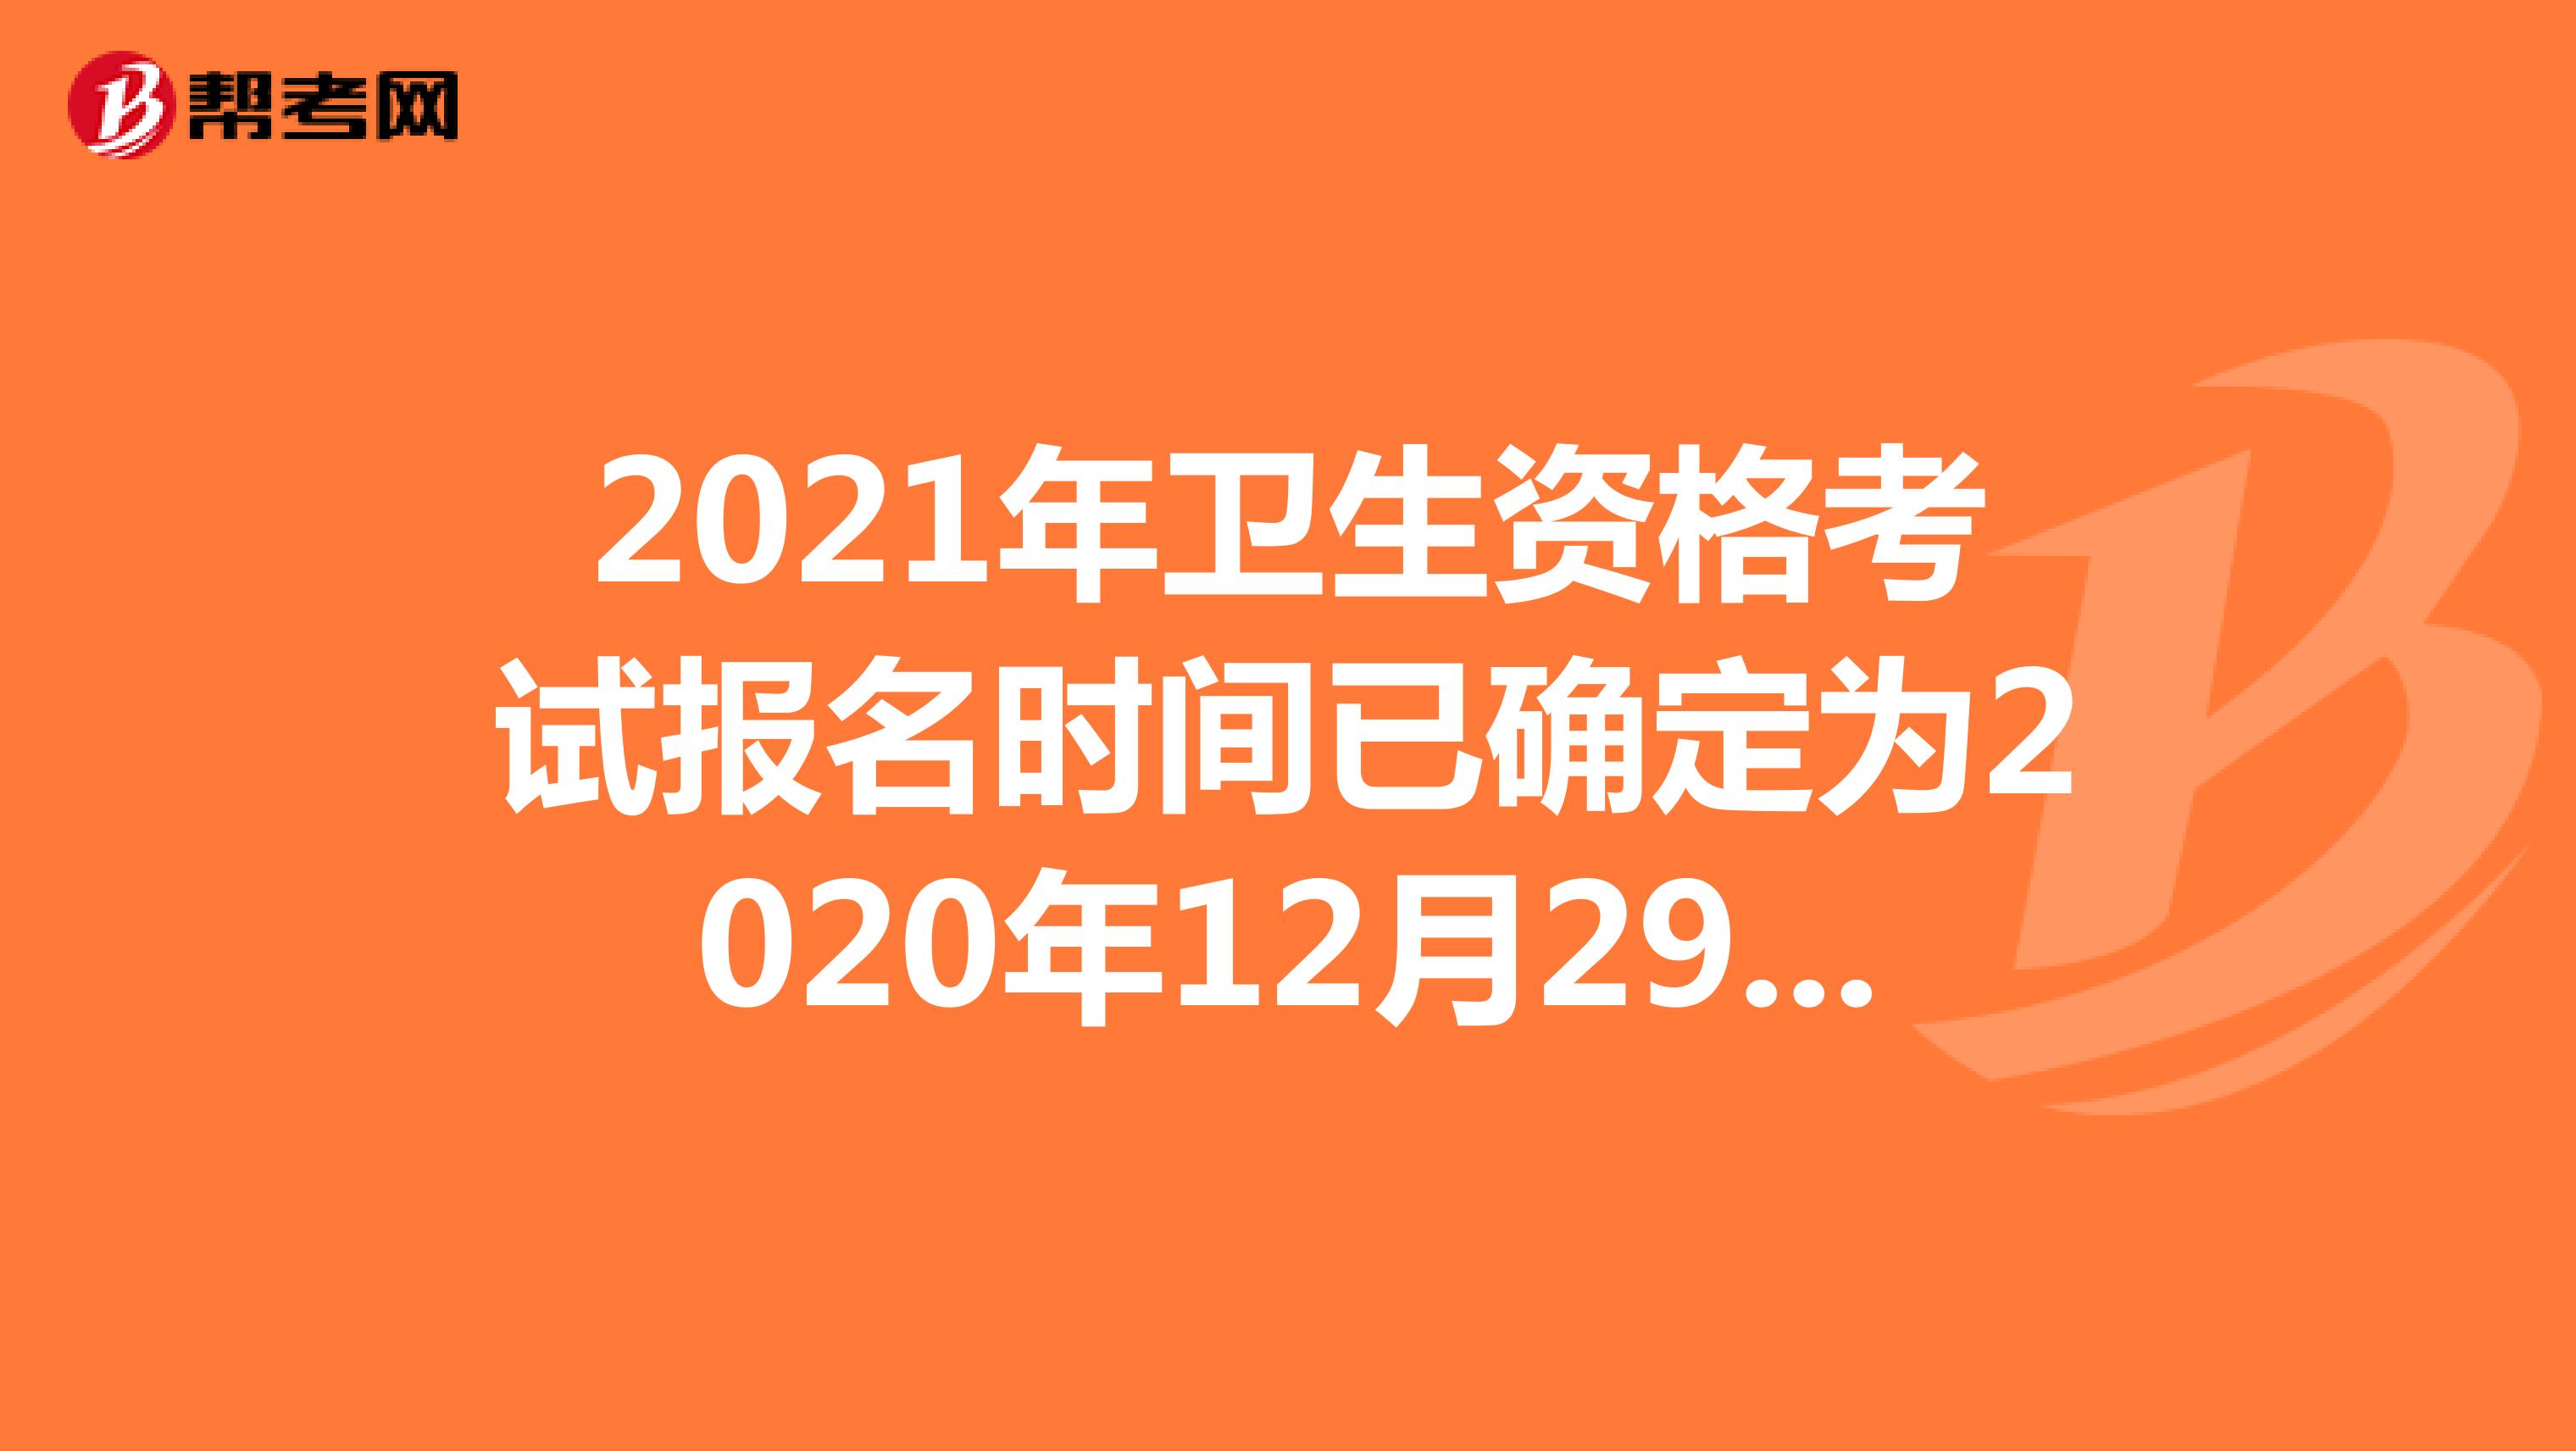 2021年卫生资格考试报名时间已确定为2020年12月29日开始